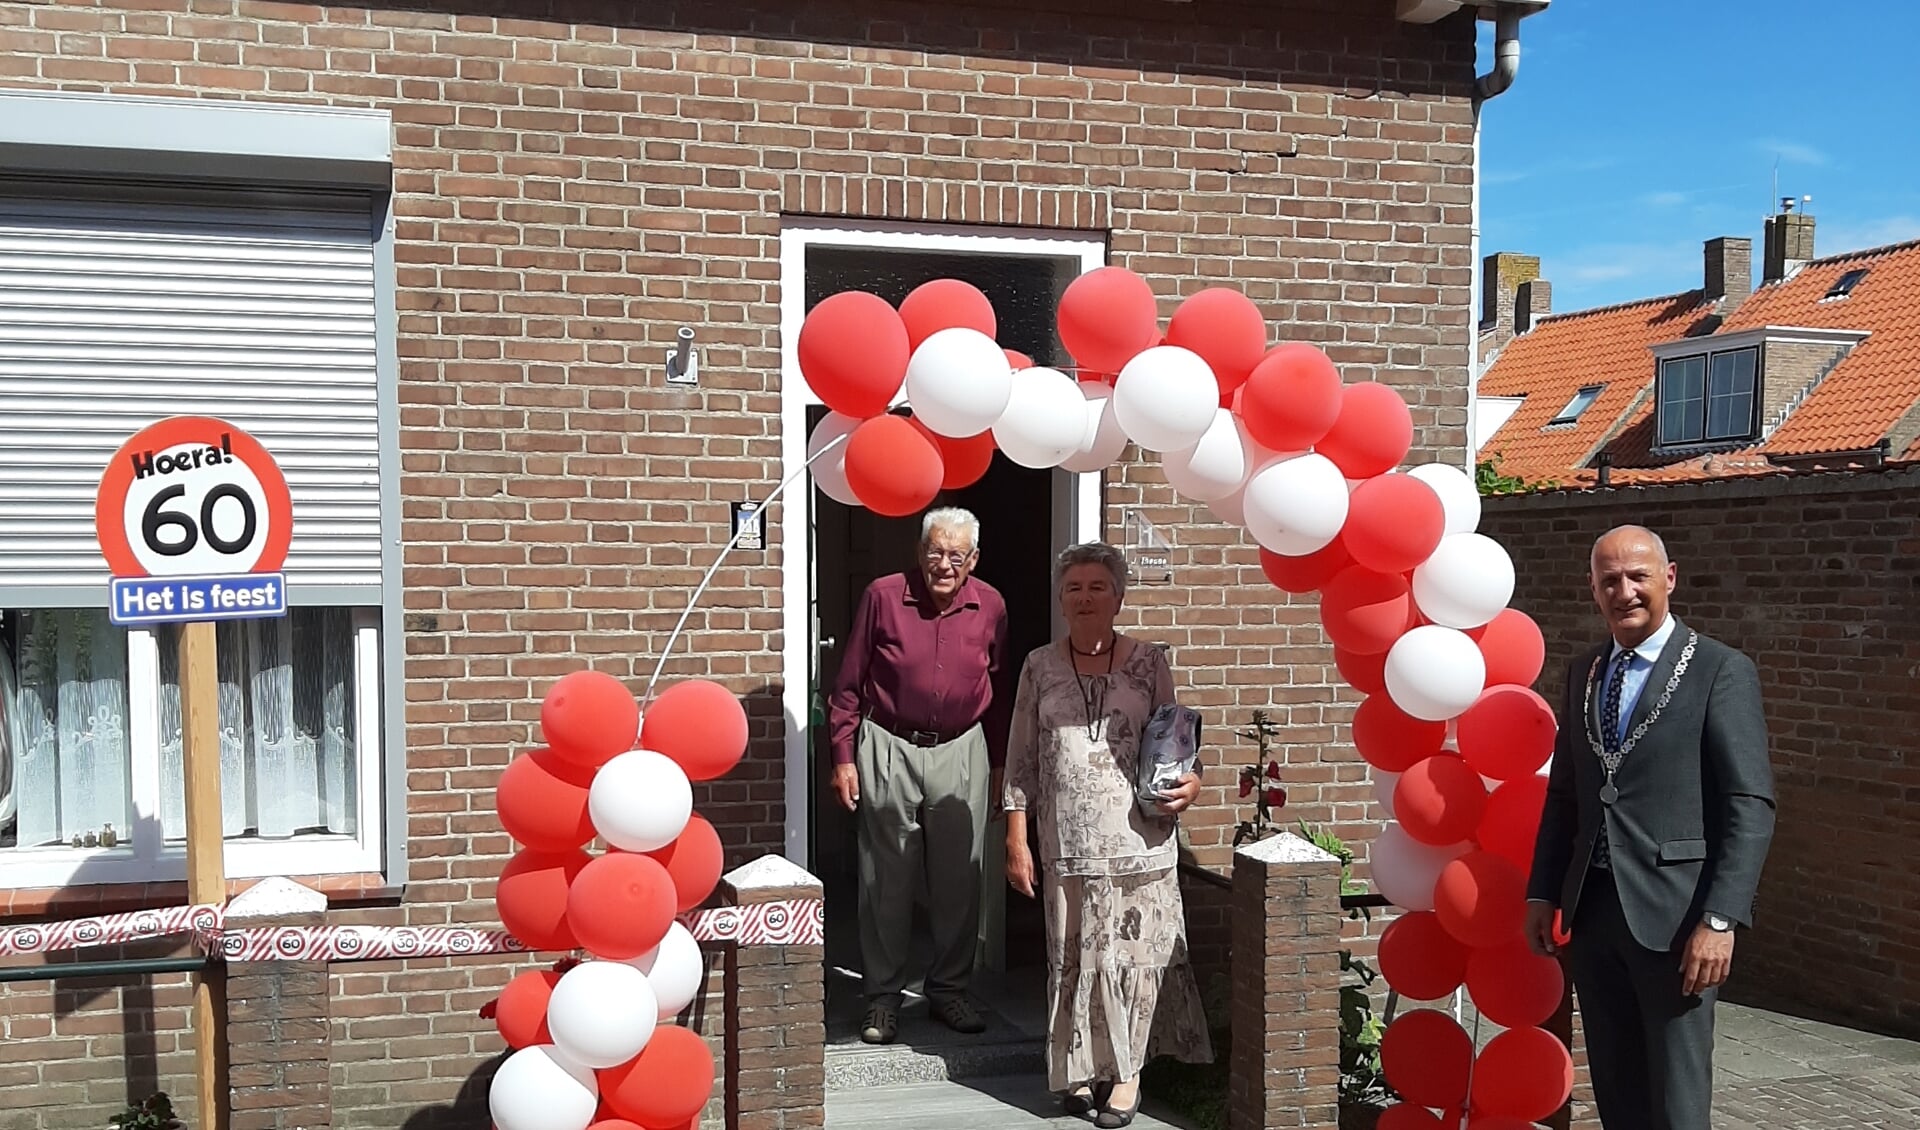 Echtpaar Theune is verrast met bezoek van de burgemeester én een haag van ballonnen.